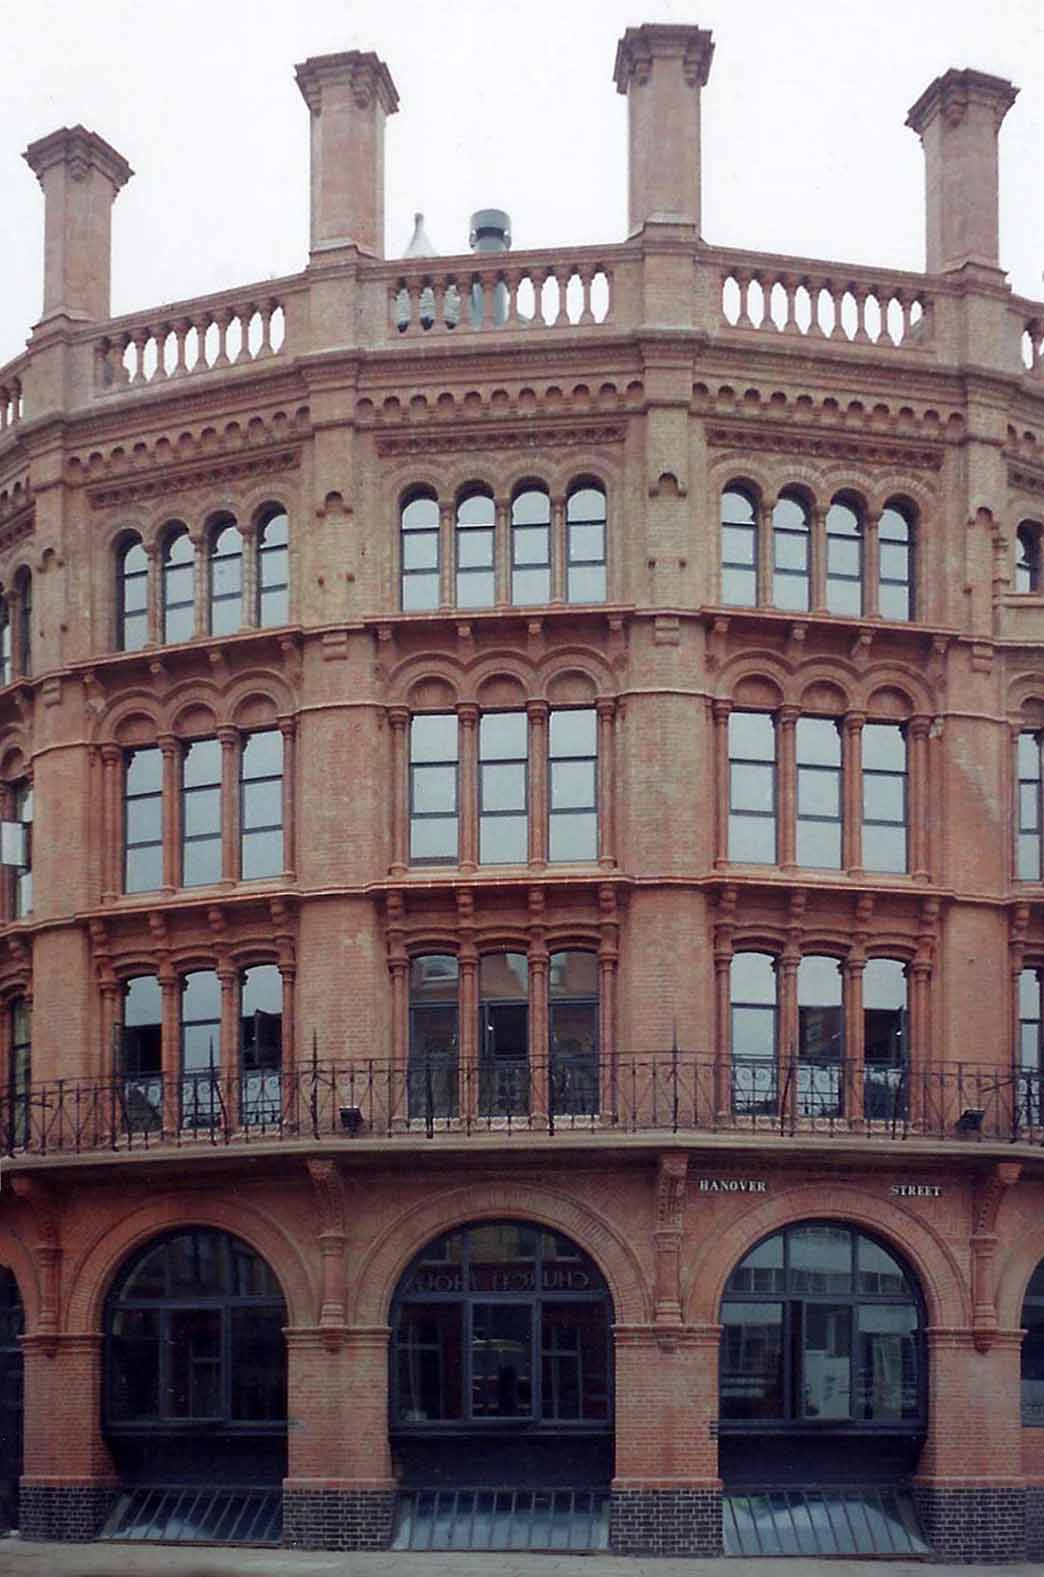 Brimley's Building, Liverpool, England